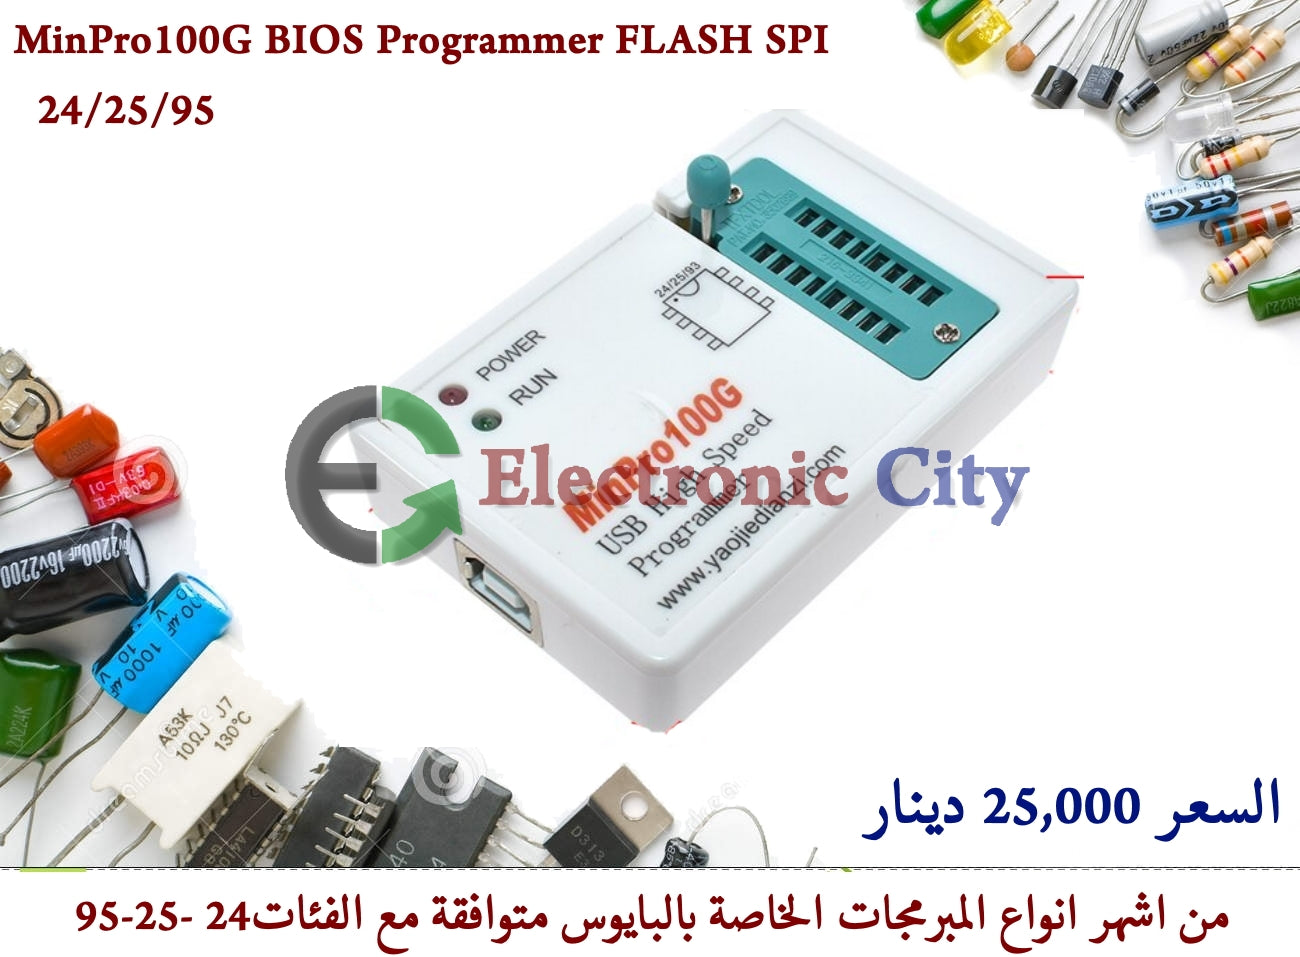 MinPro100G BIOS Programmer FLASH SPI 24/25/95 #K8 011204